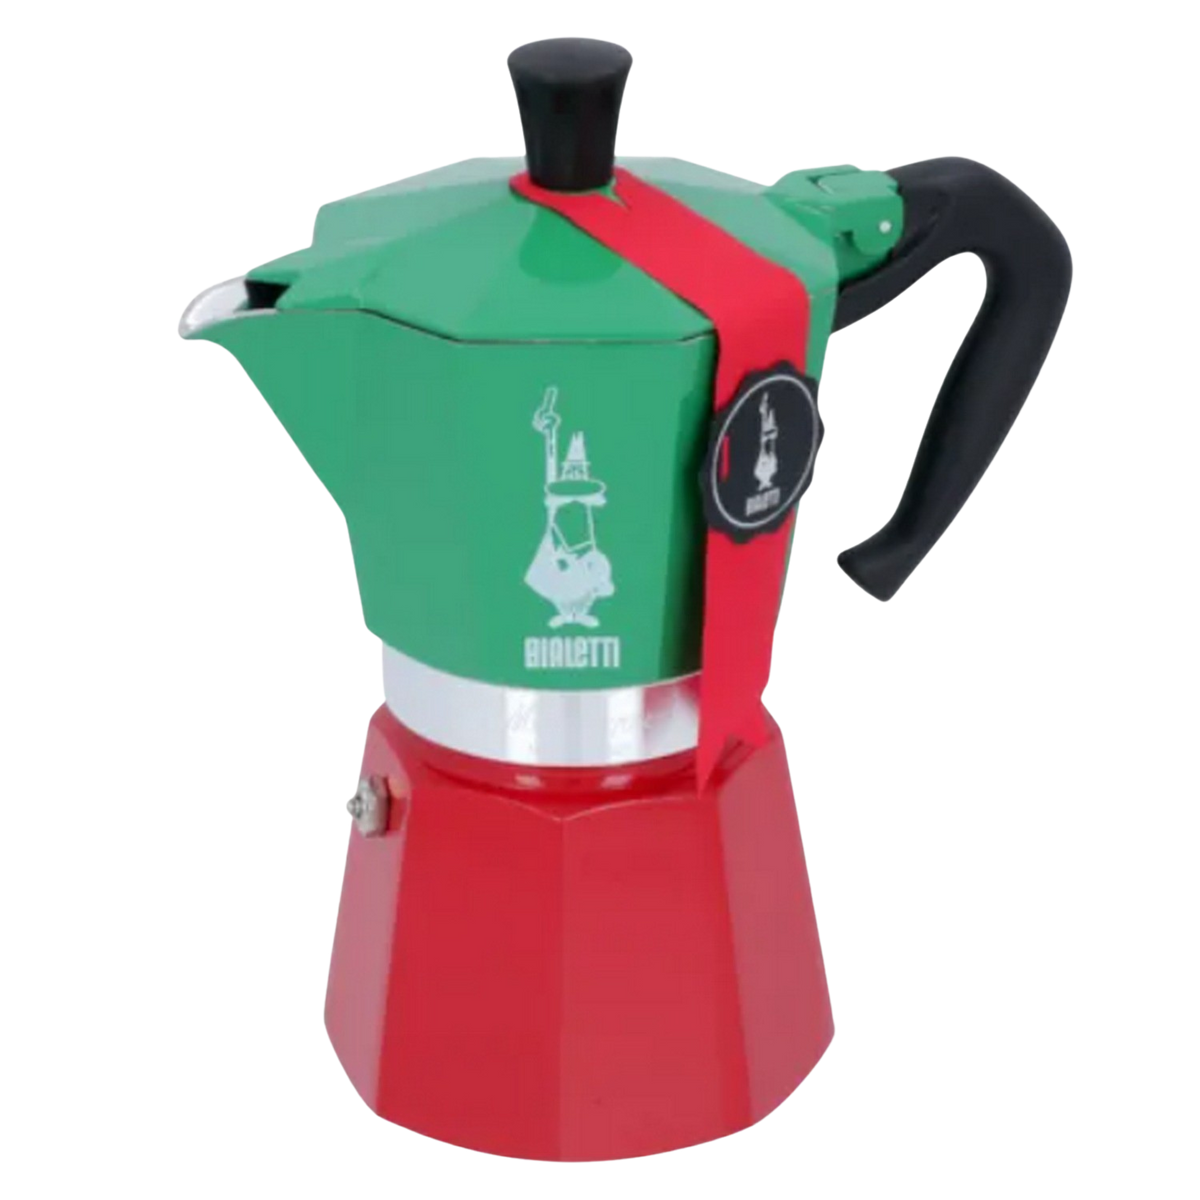 6 Moka für Rot/Grün/Silber Tassen ITALIA Express BIALETTI Espressokocher